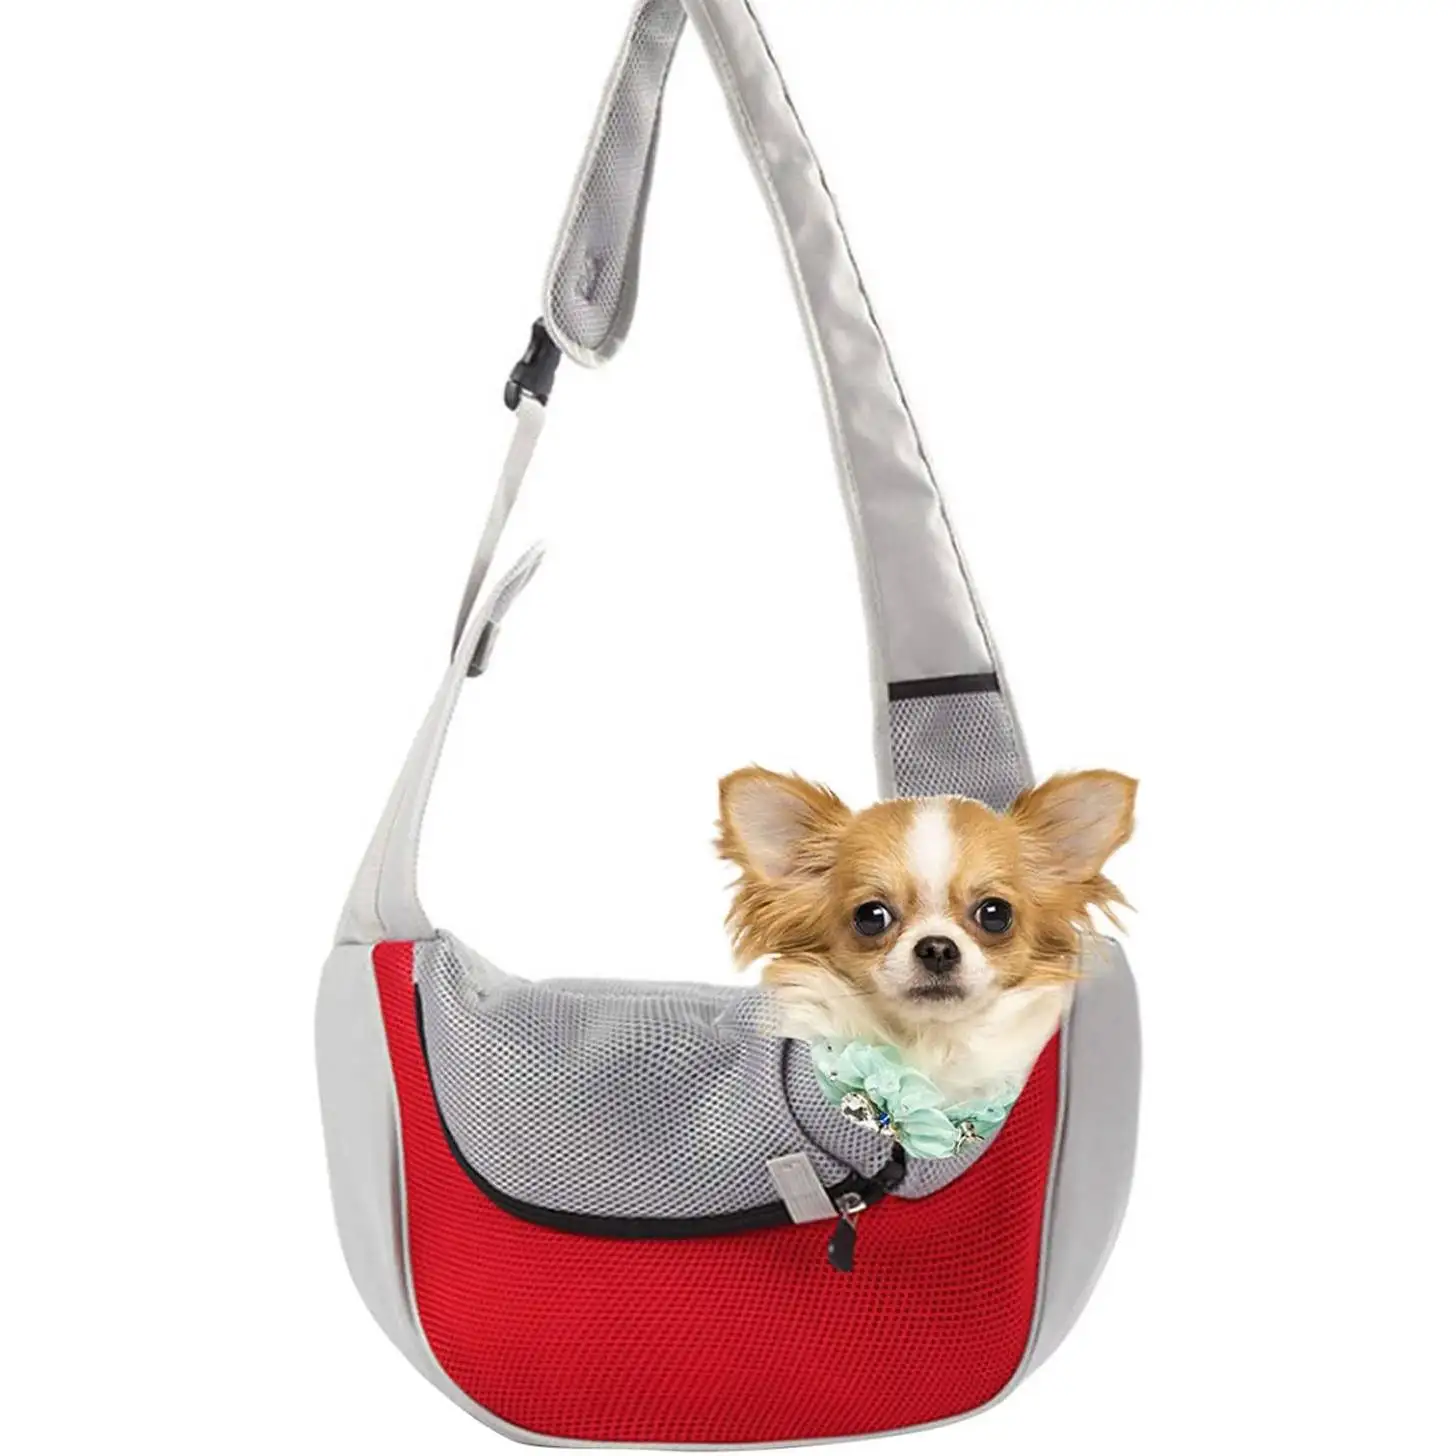 

ZOOBERS Dog Sling Carrier Bag Shoulder Bag For Cat and Dog Dog Carrier Bag For Small Dogs Up to 10lbs Pet Shoulder Chest Bag